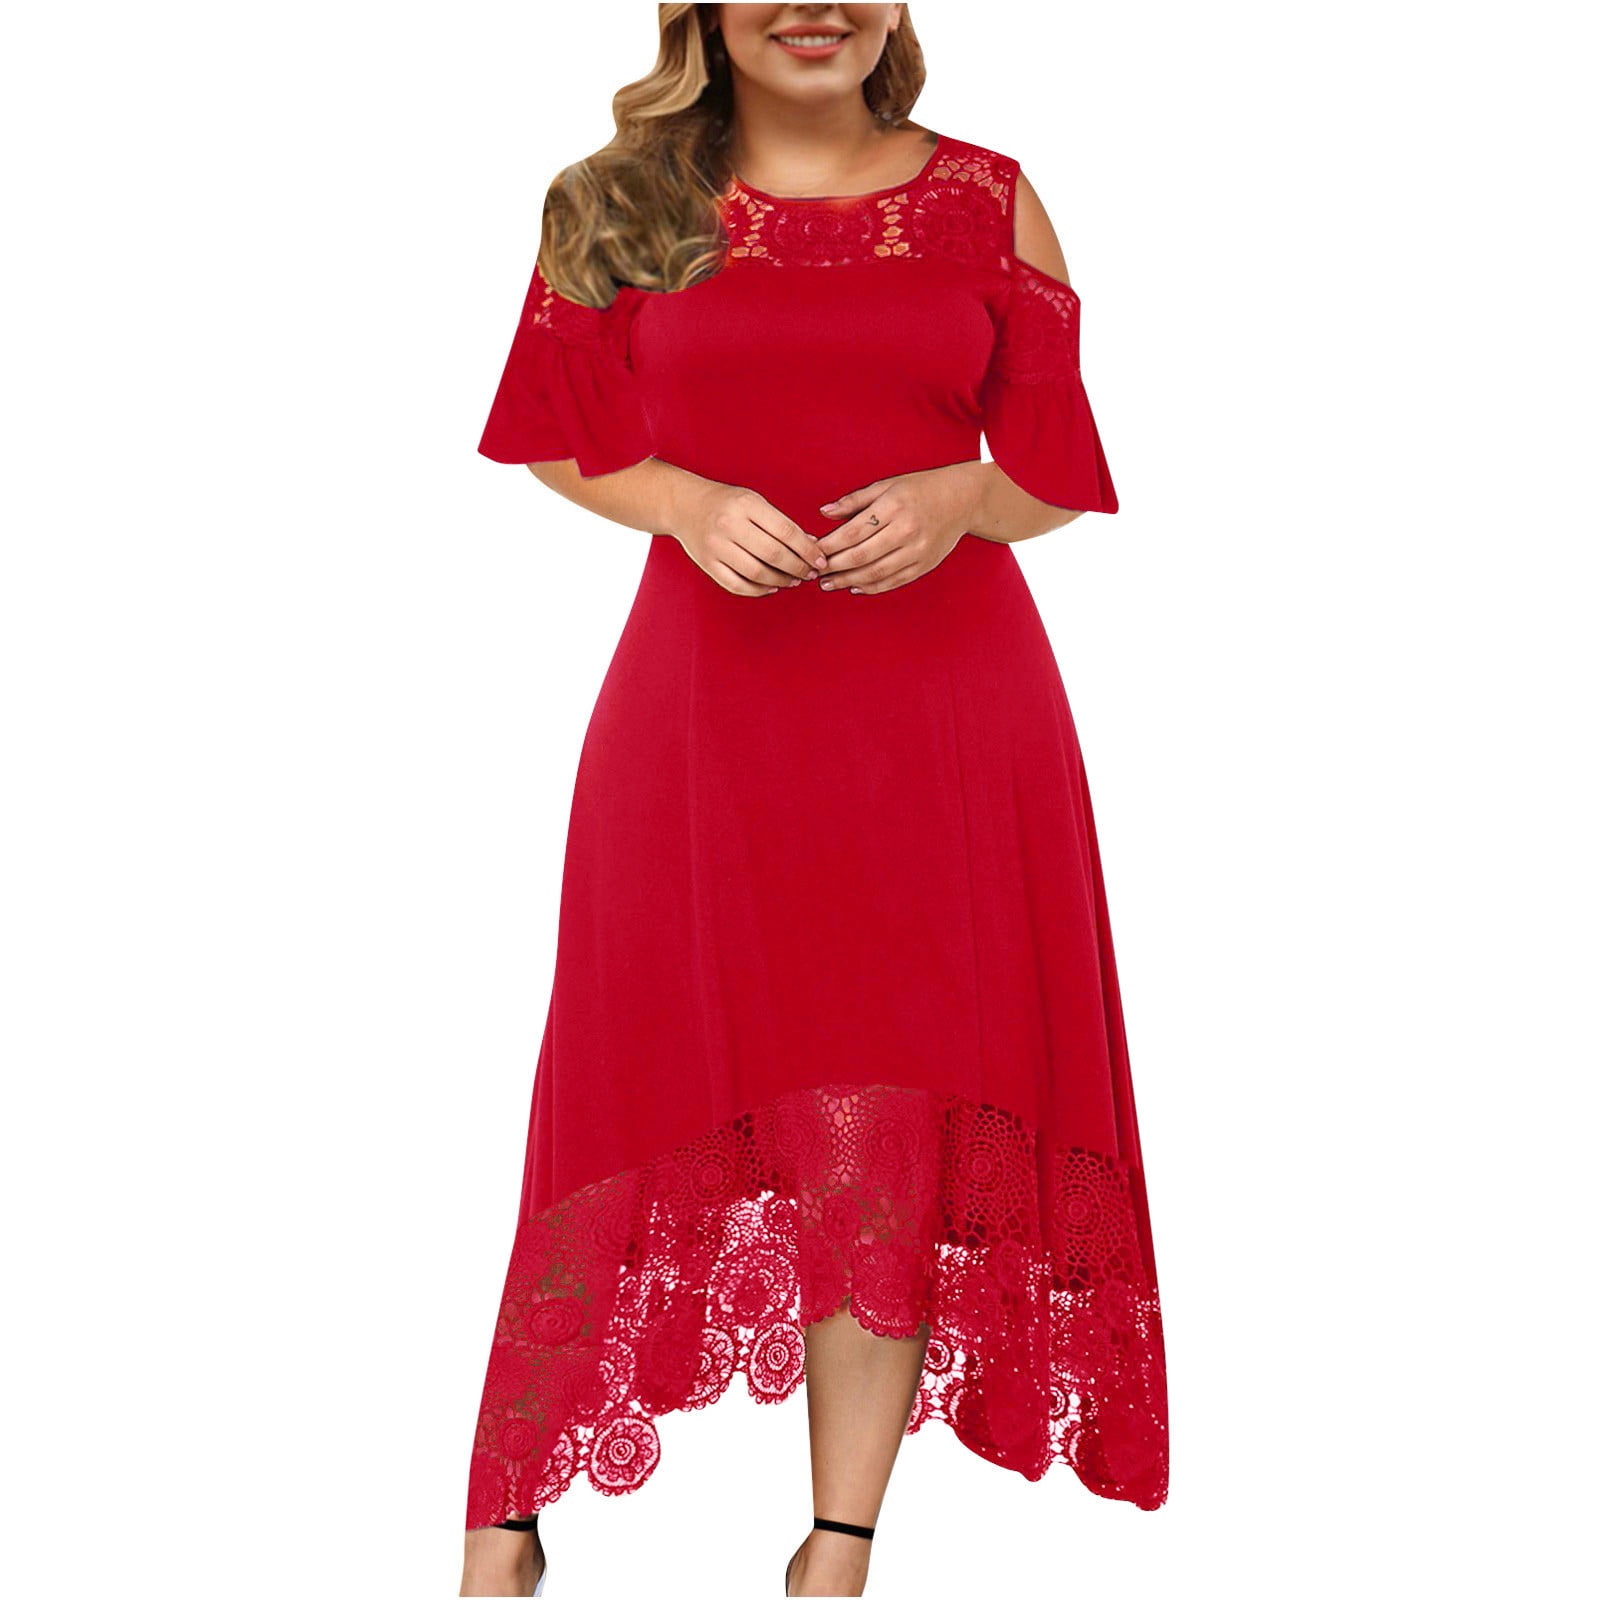 Wozhidaose Prom Dress Red Dresses for Women Long Elegant Halter